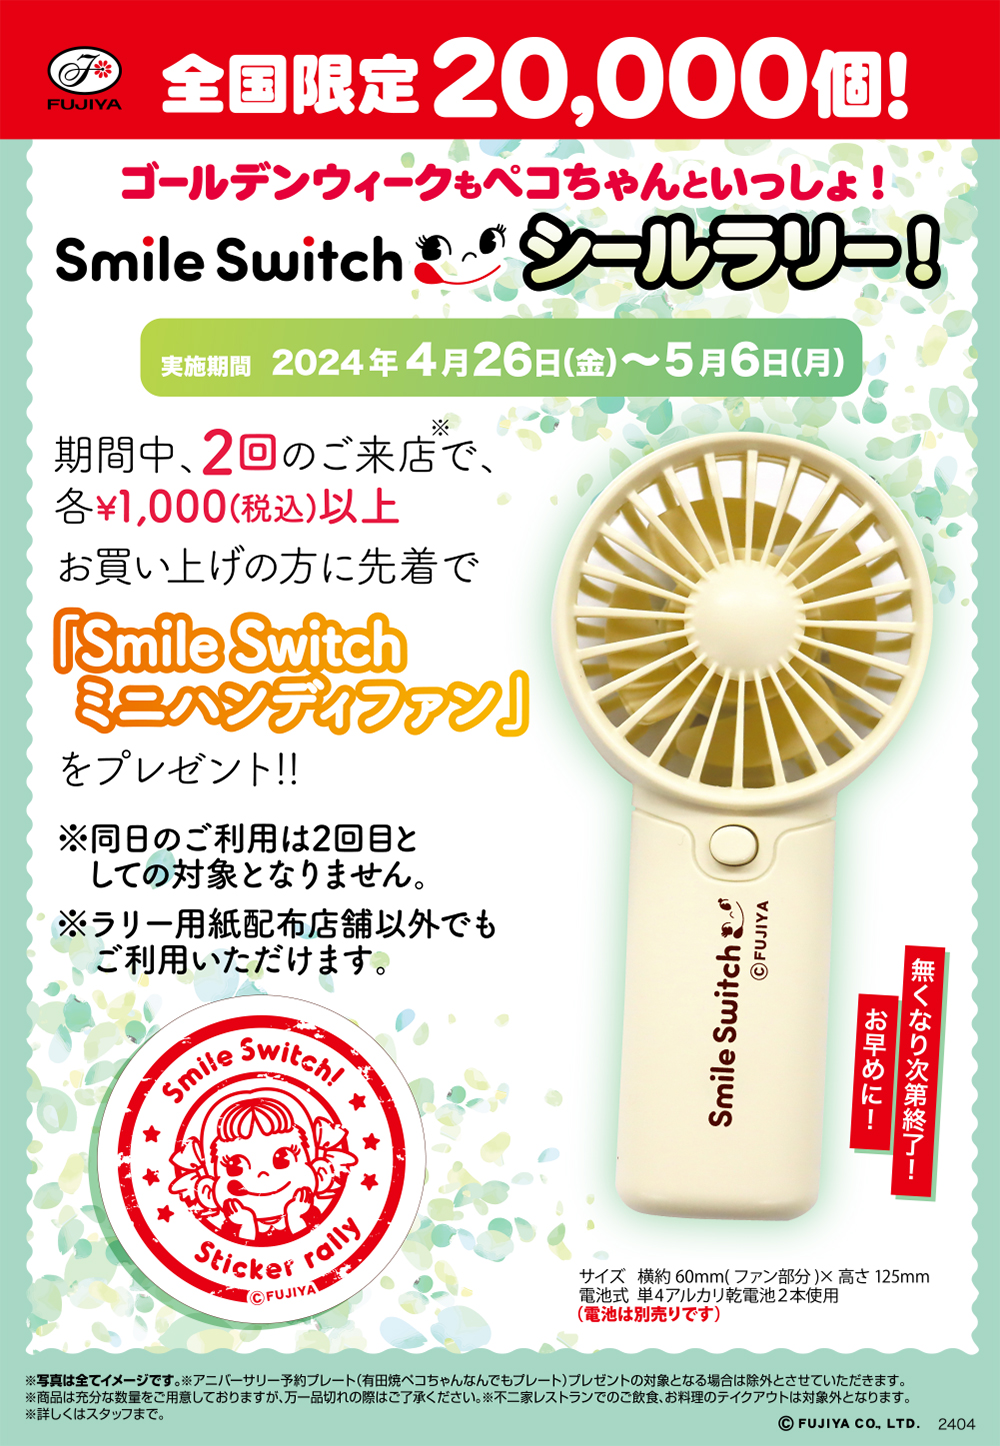 FUJIYA 全国限定20,000個！ ゴールデンウィークもペコちゃんといっしょ！ Smile Switch シールラリー！ 実施期間 2024年4月26日(金)～5月6日(月) 期間中、2回のご来店※で、各¥1,000(税込)以上お買い上げの方に先着で「Smile Switch ミニハンディファン」をプレゼント!! ※同日のご利用は2回目としての対象となりません。 ※ラリー用紙配布店舗以外でもご利用いただけます。 無くなり次第終了！ お早めに！ サイズ 横約 60mm(ファン部分)× 高さ 125mm 電池式 単4アルカリ乾電池2本使用 (電池は別売りです) ※写真は全てイメージです。※アニバーサリー予約プレート(有田焼ペコちゃんなんでもプレート)プレゼントの対象となる場合は除外とさせていただきます。 ※商品は充分な数量をご用意しておりますが、万一品切れの際はご了承ください。※不二家レストランでのご飲食、お料理のテイクアウトは対象外となります。 ※詳しくはスタッフまで。 © FUJIYA CO. LTD. 2404